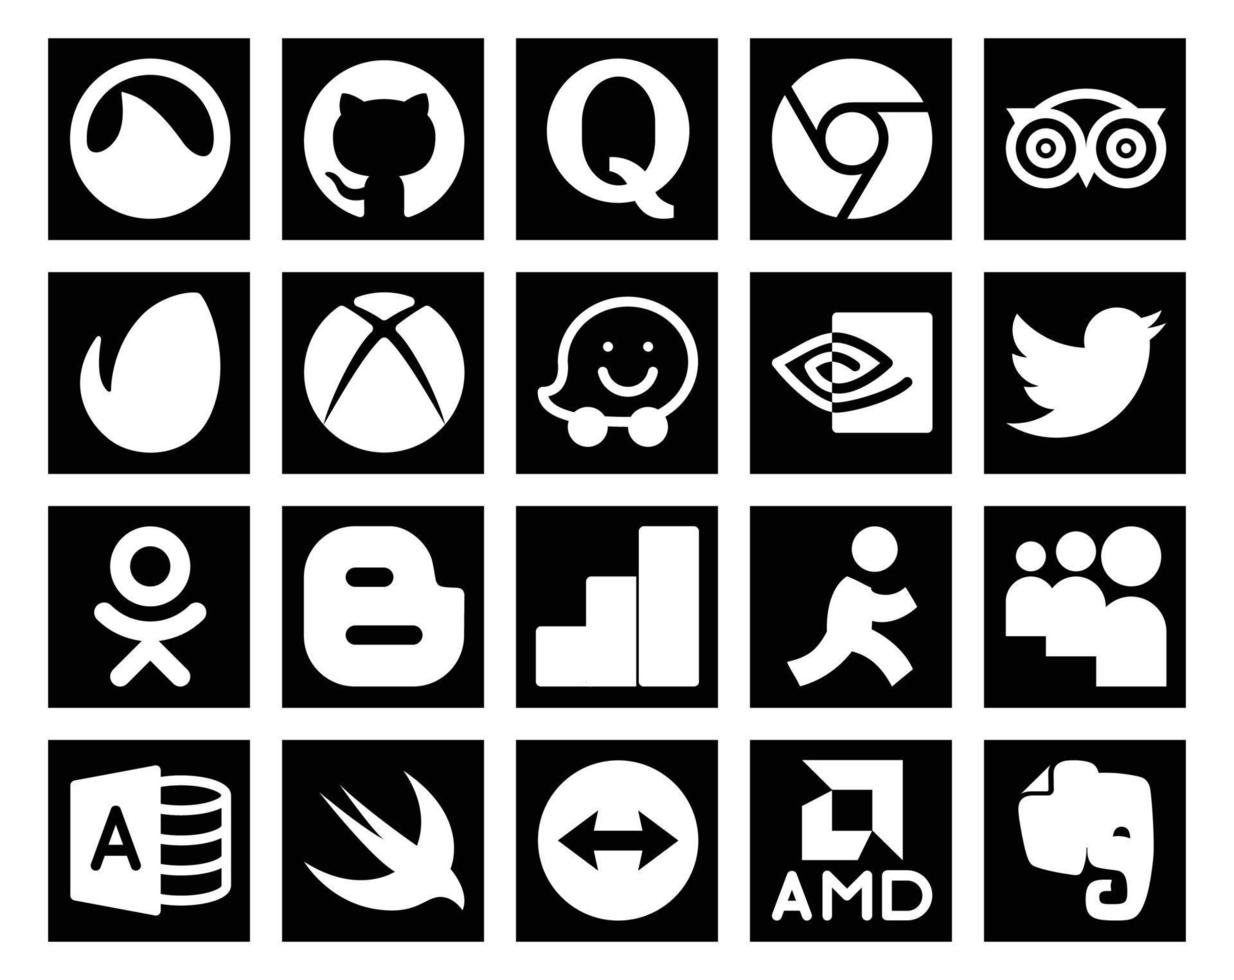 Paquete de 20 íconos de redes sociales que incluye myspace google analytics xbox blogger tweet vector